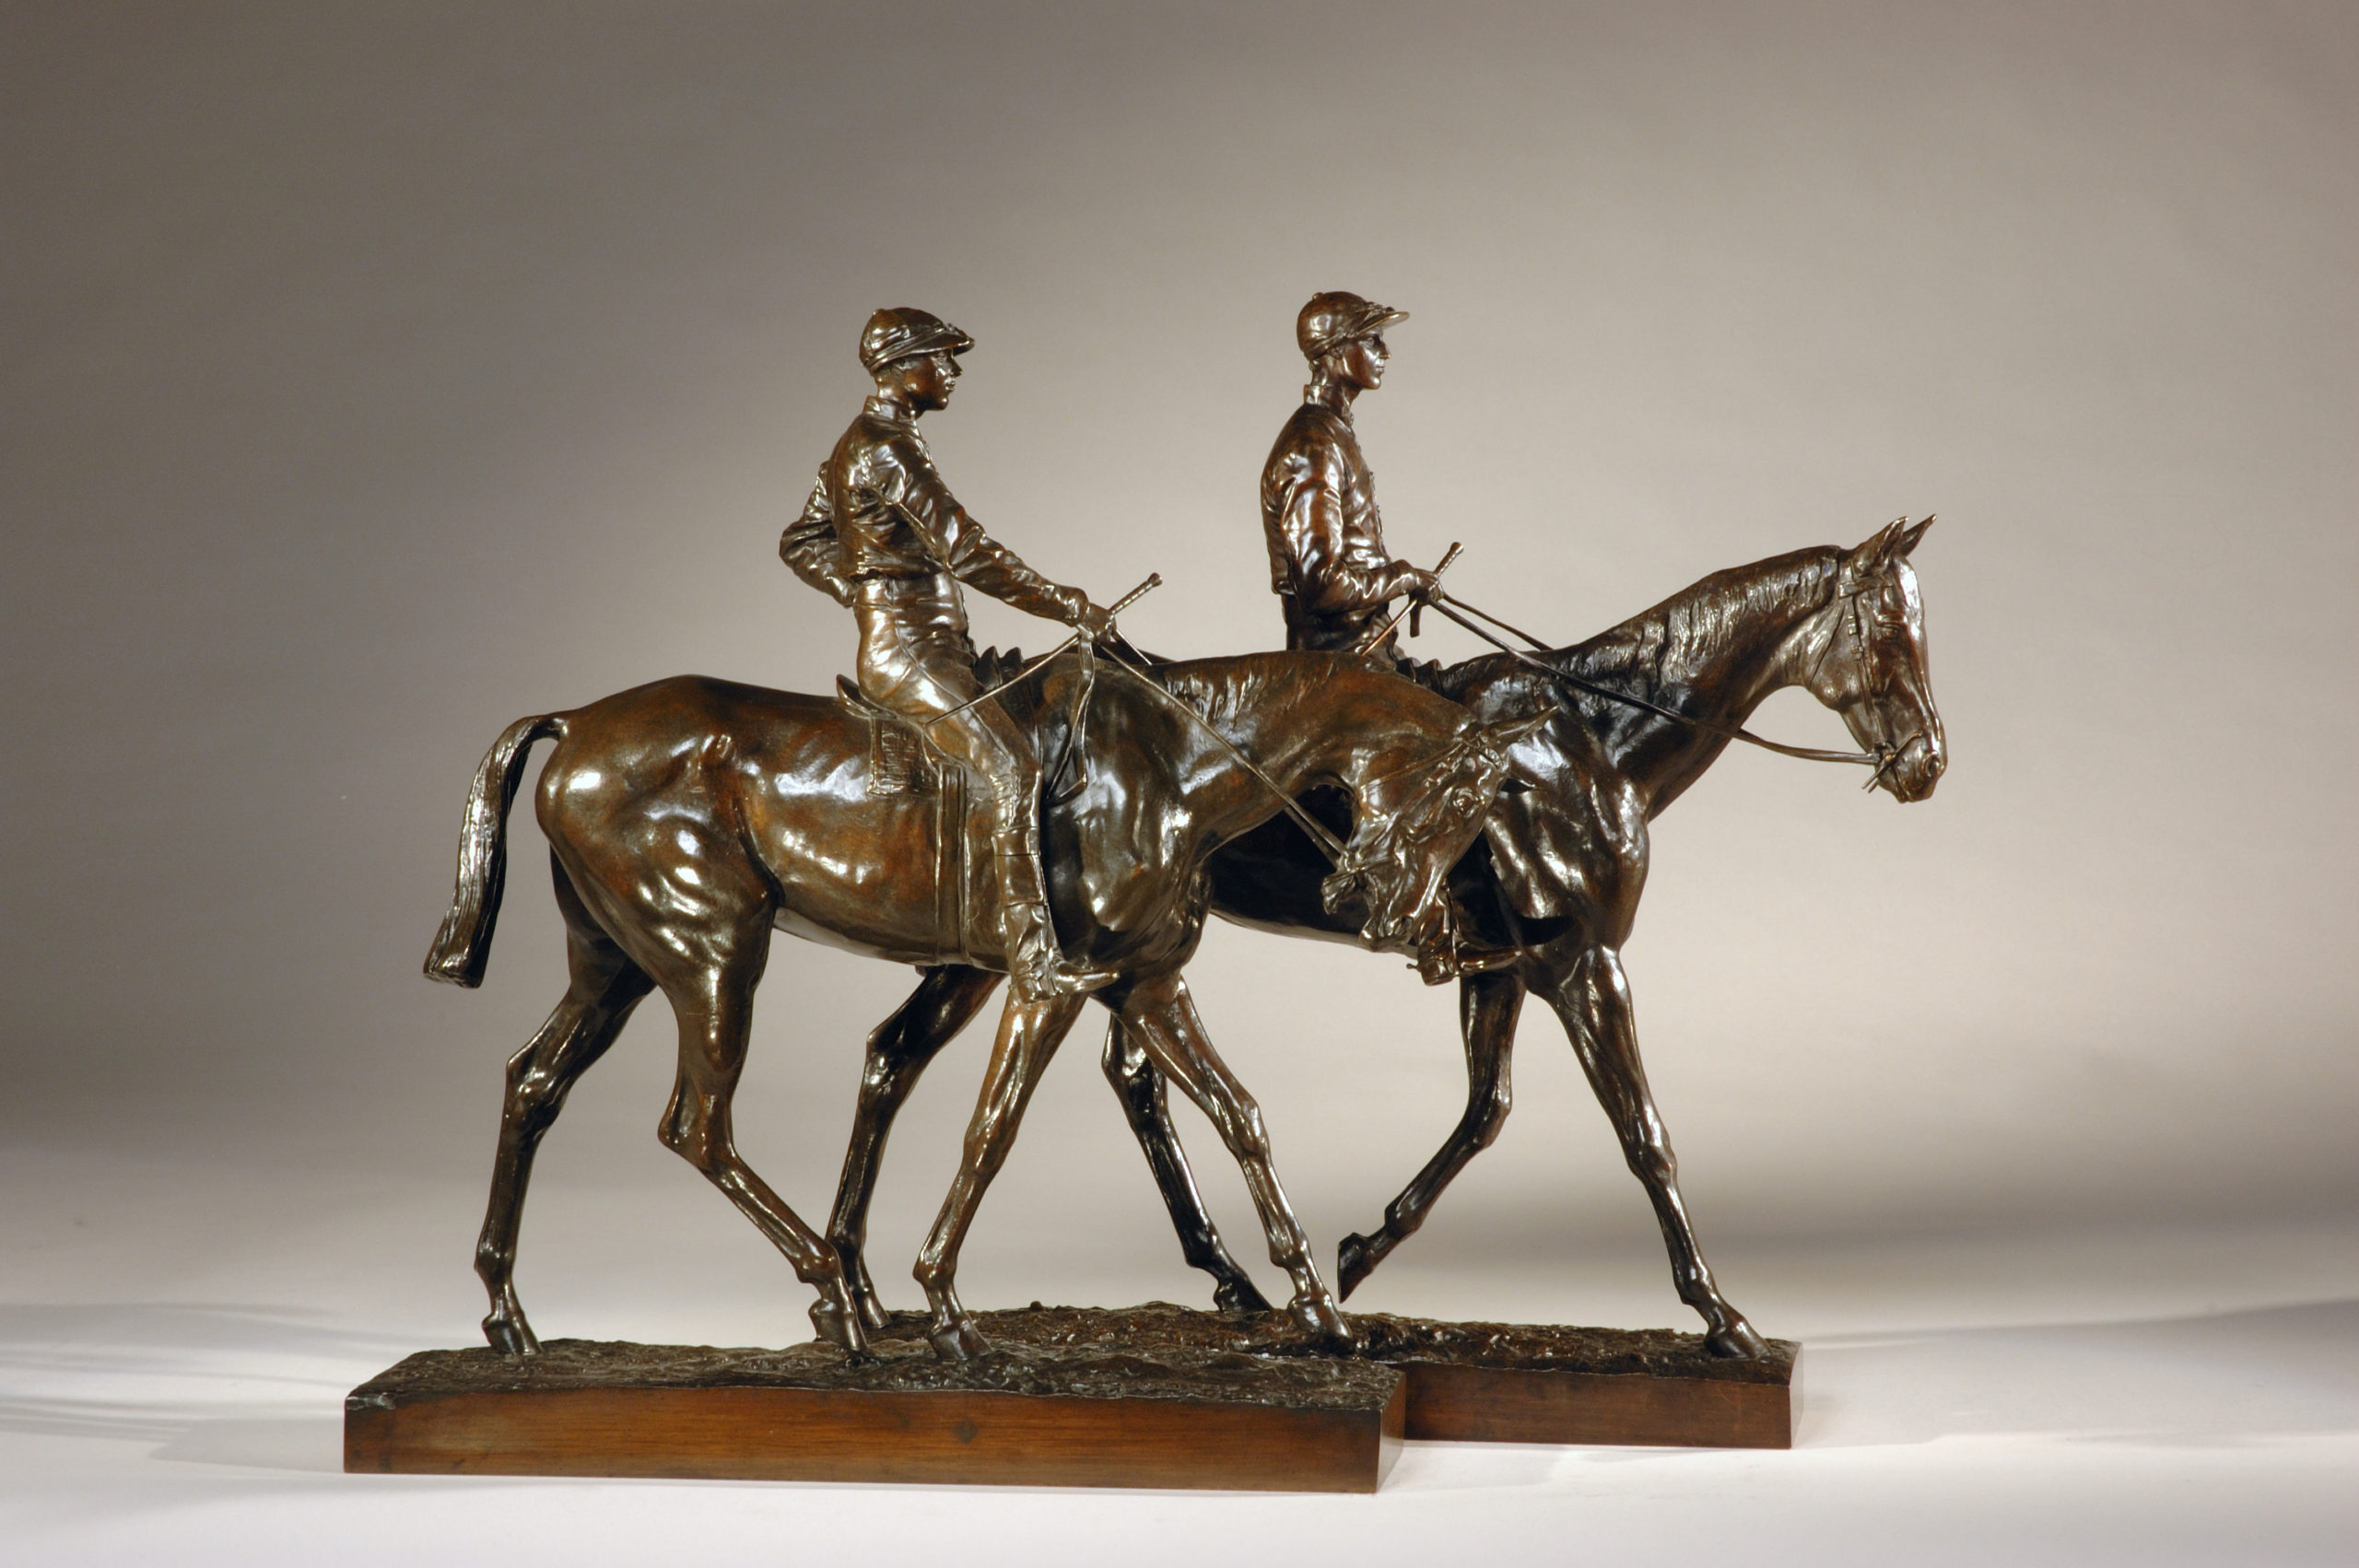 Racehorses and Jockeys, c. 1885